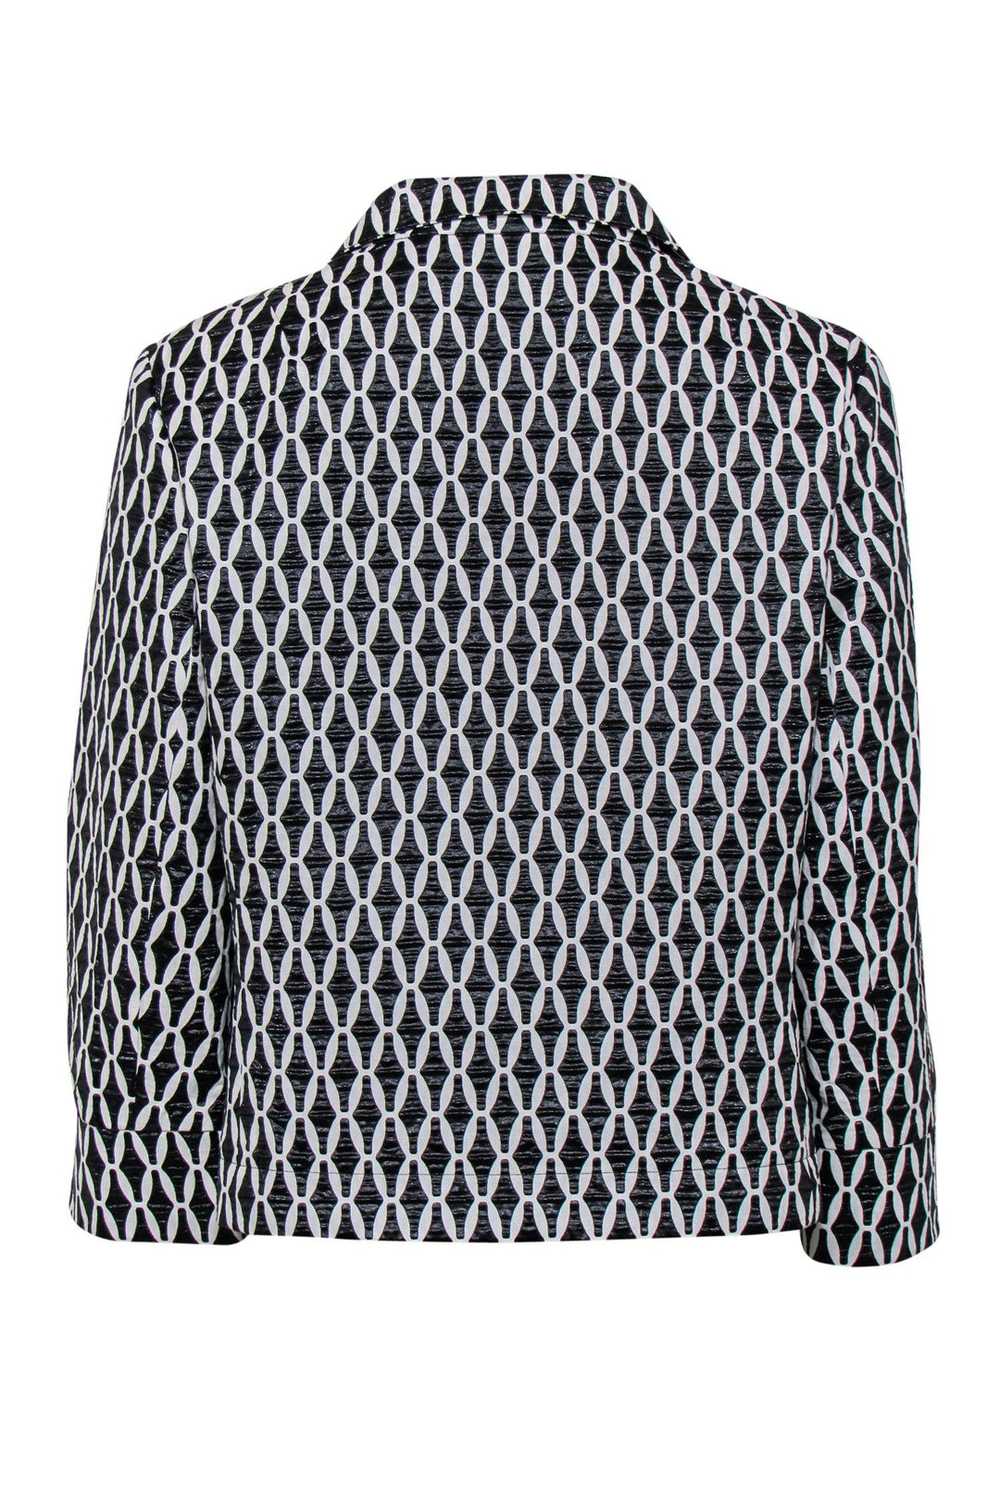 Carlisle - Black & White Textured Cropped Jacket … - image 3